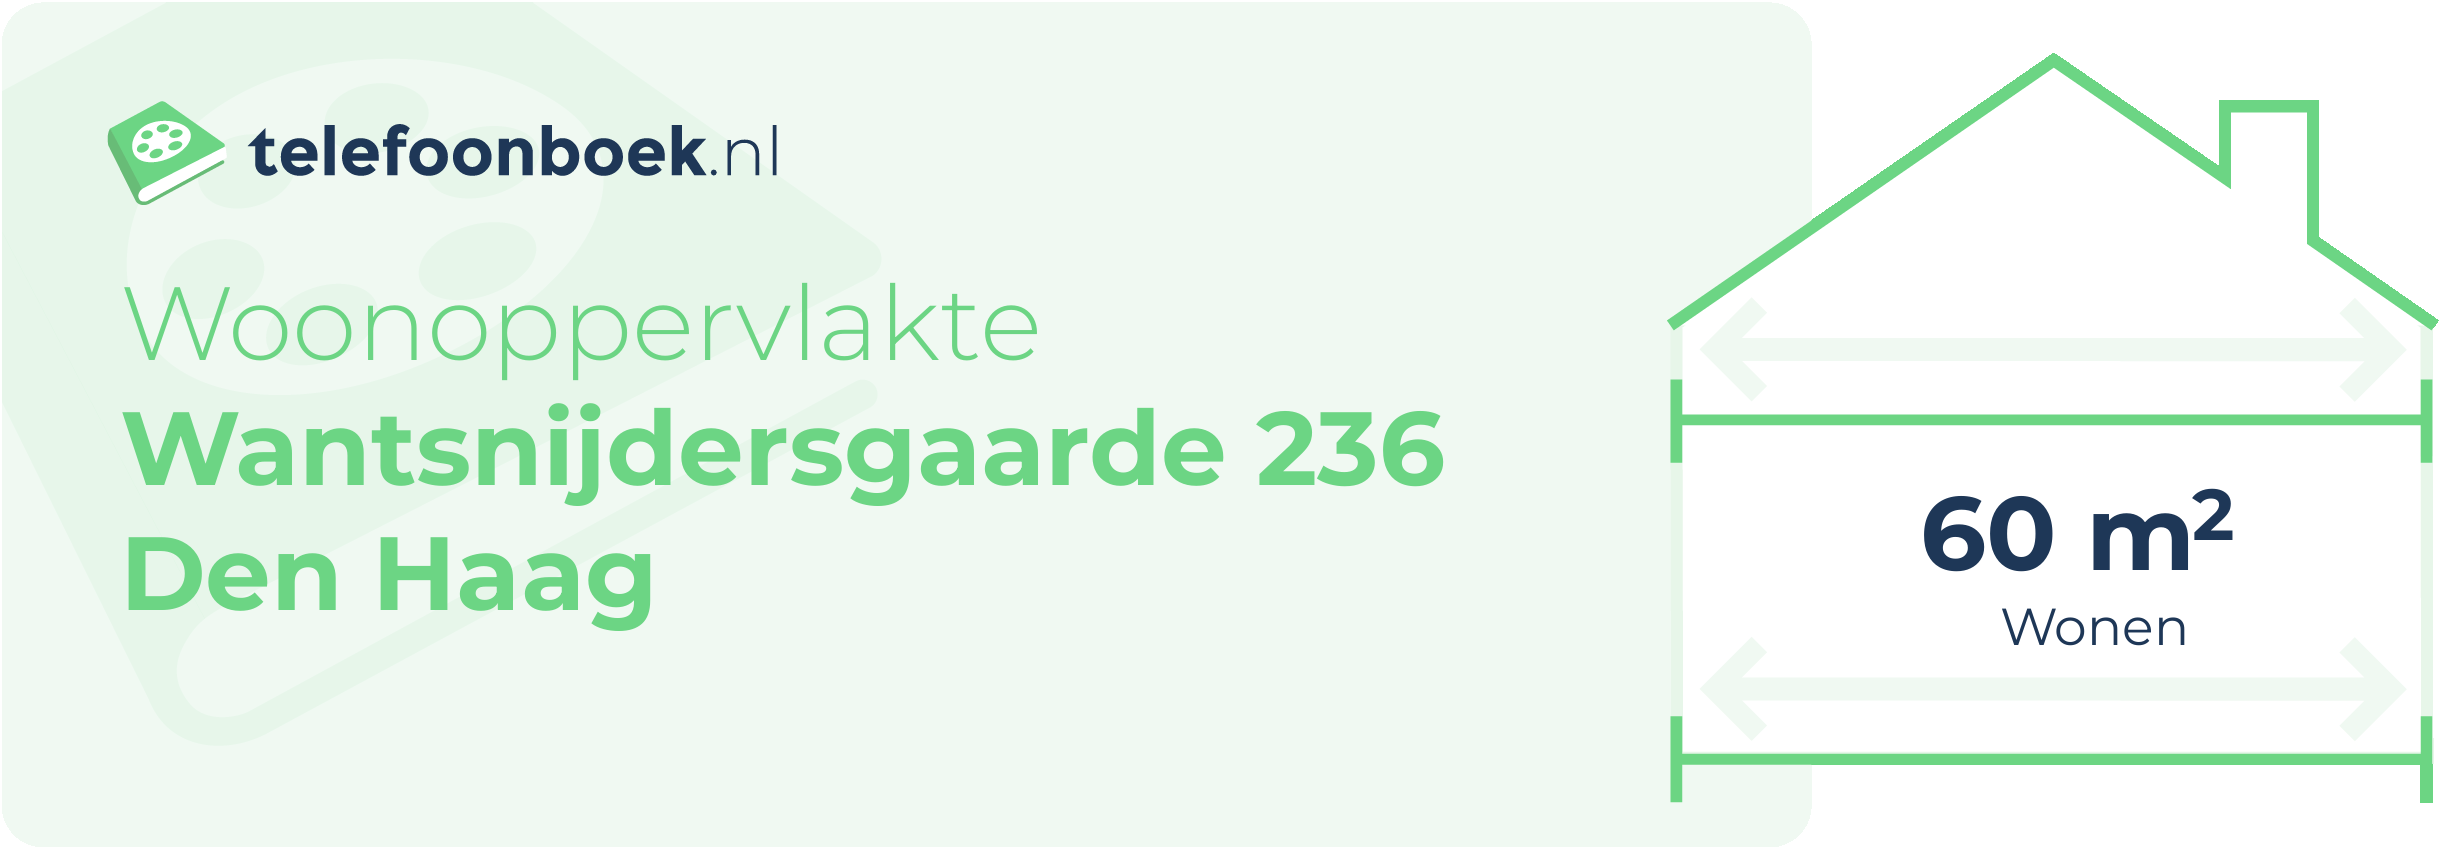 Woonoppervlakte Wantsnijdersgaarde 236 Den Haag